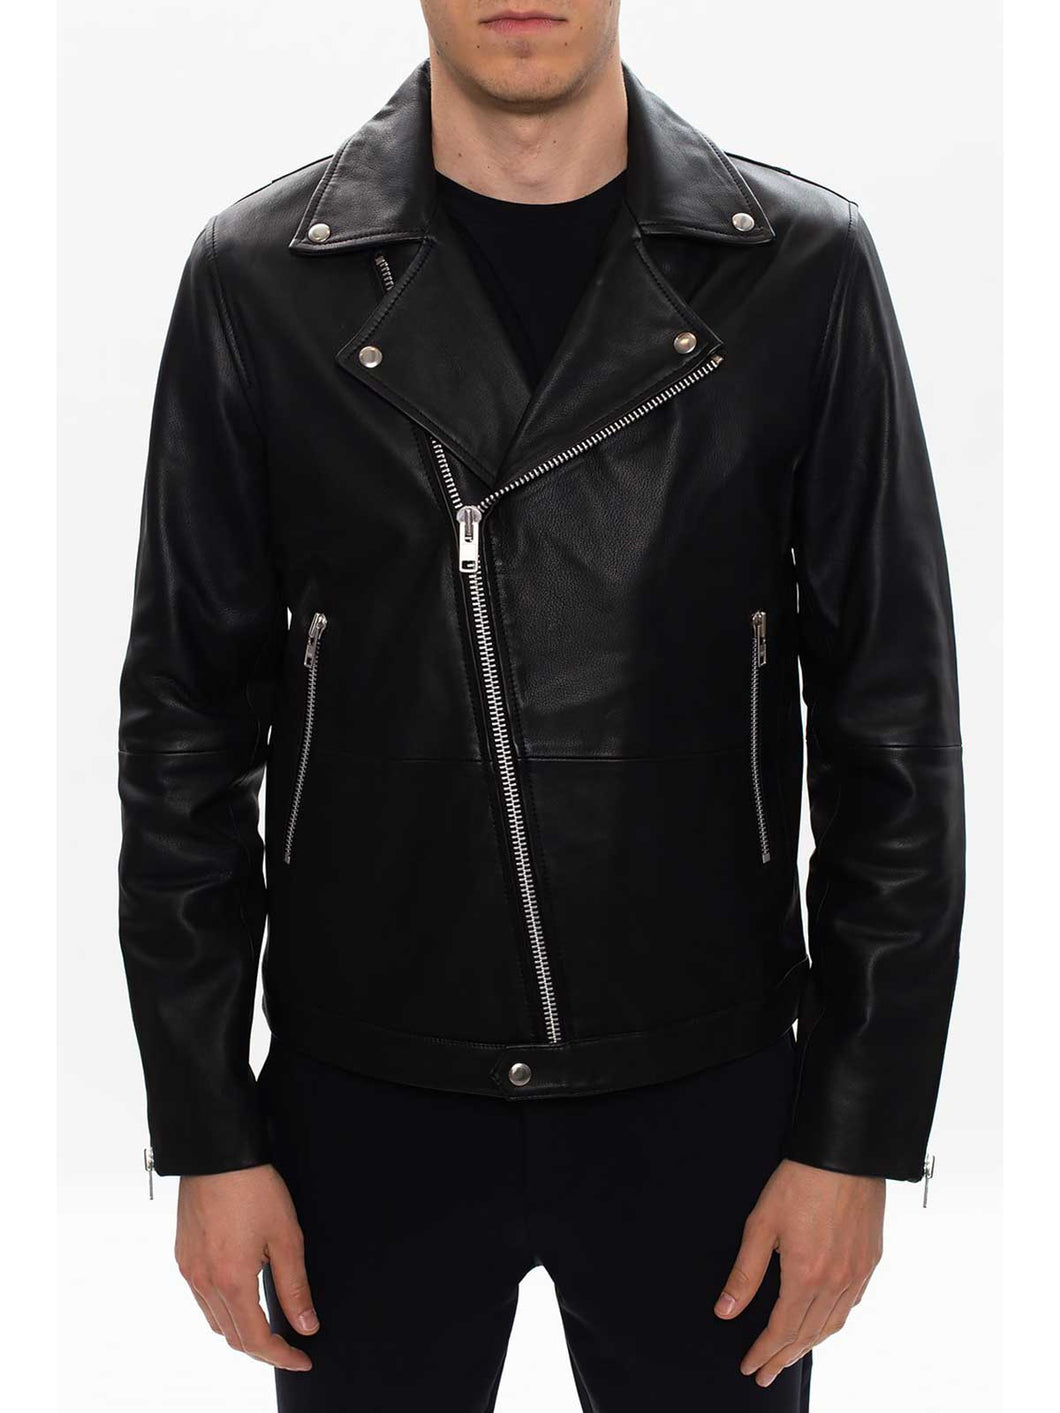 Black Asymmetrical Leather Jacket | Black Asymmetrical Moto Jacket